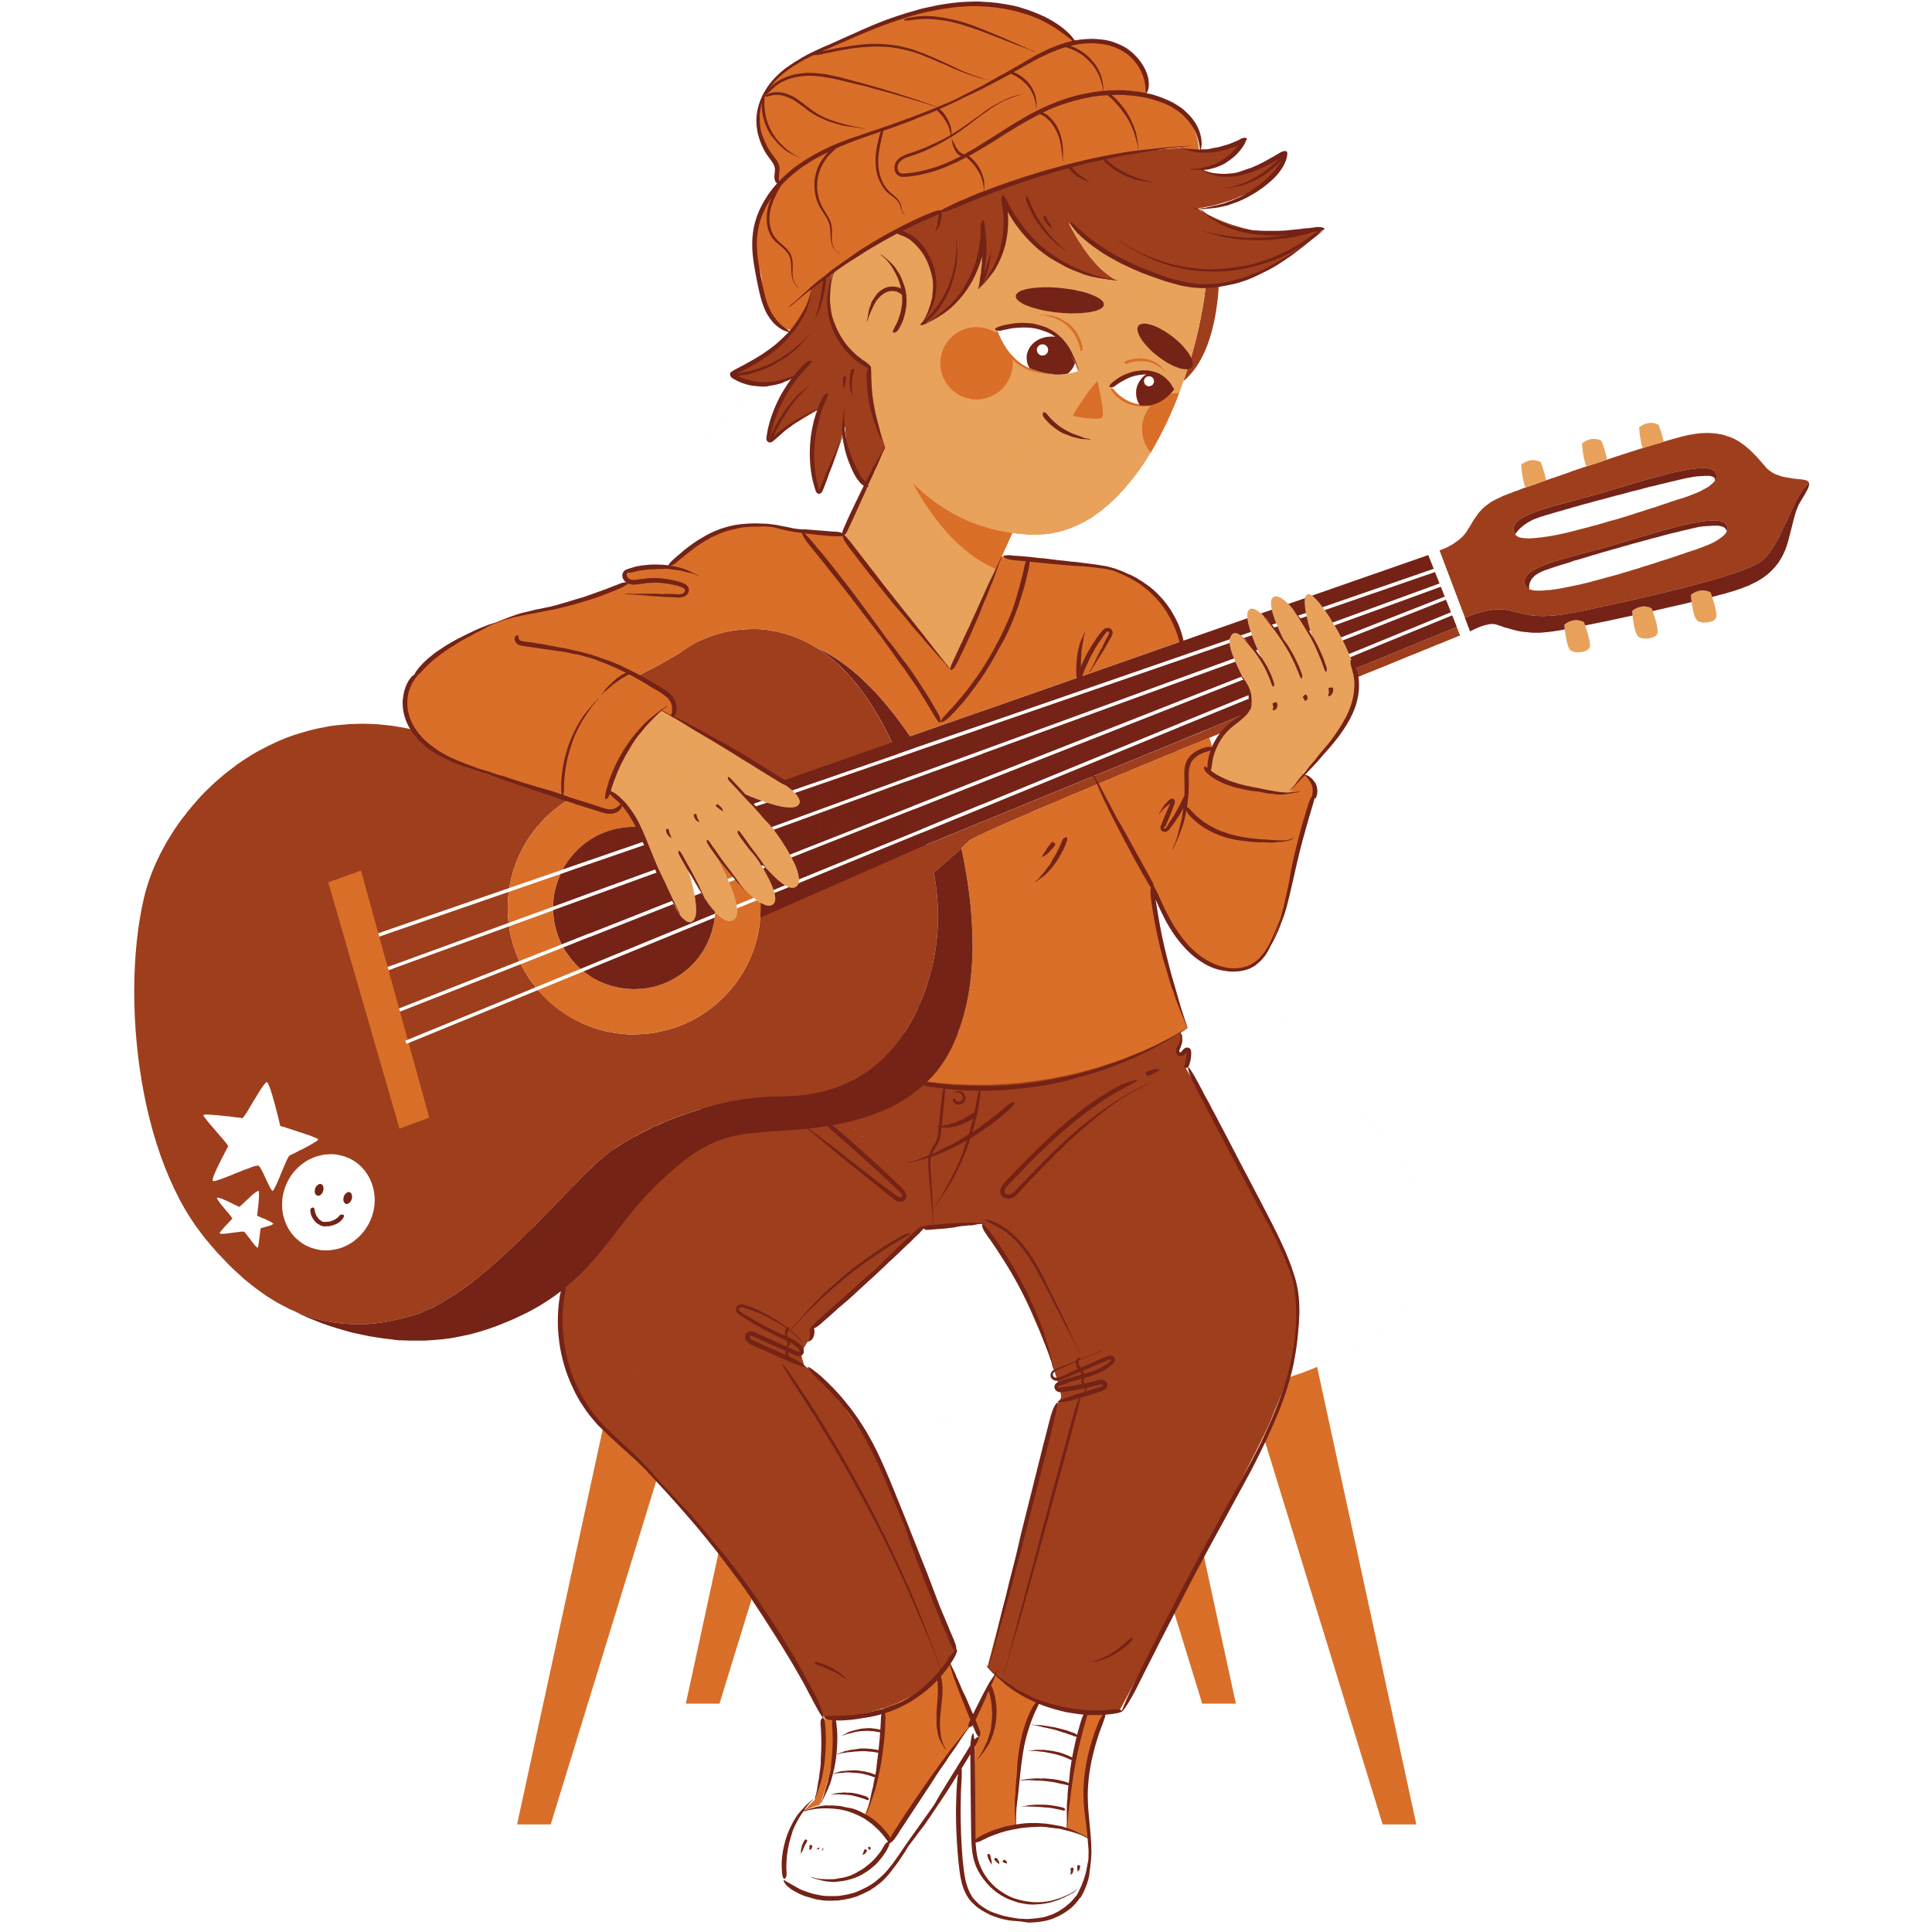 Boy playing guitar Image